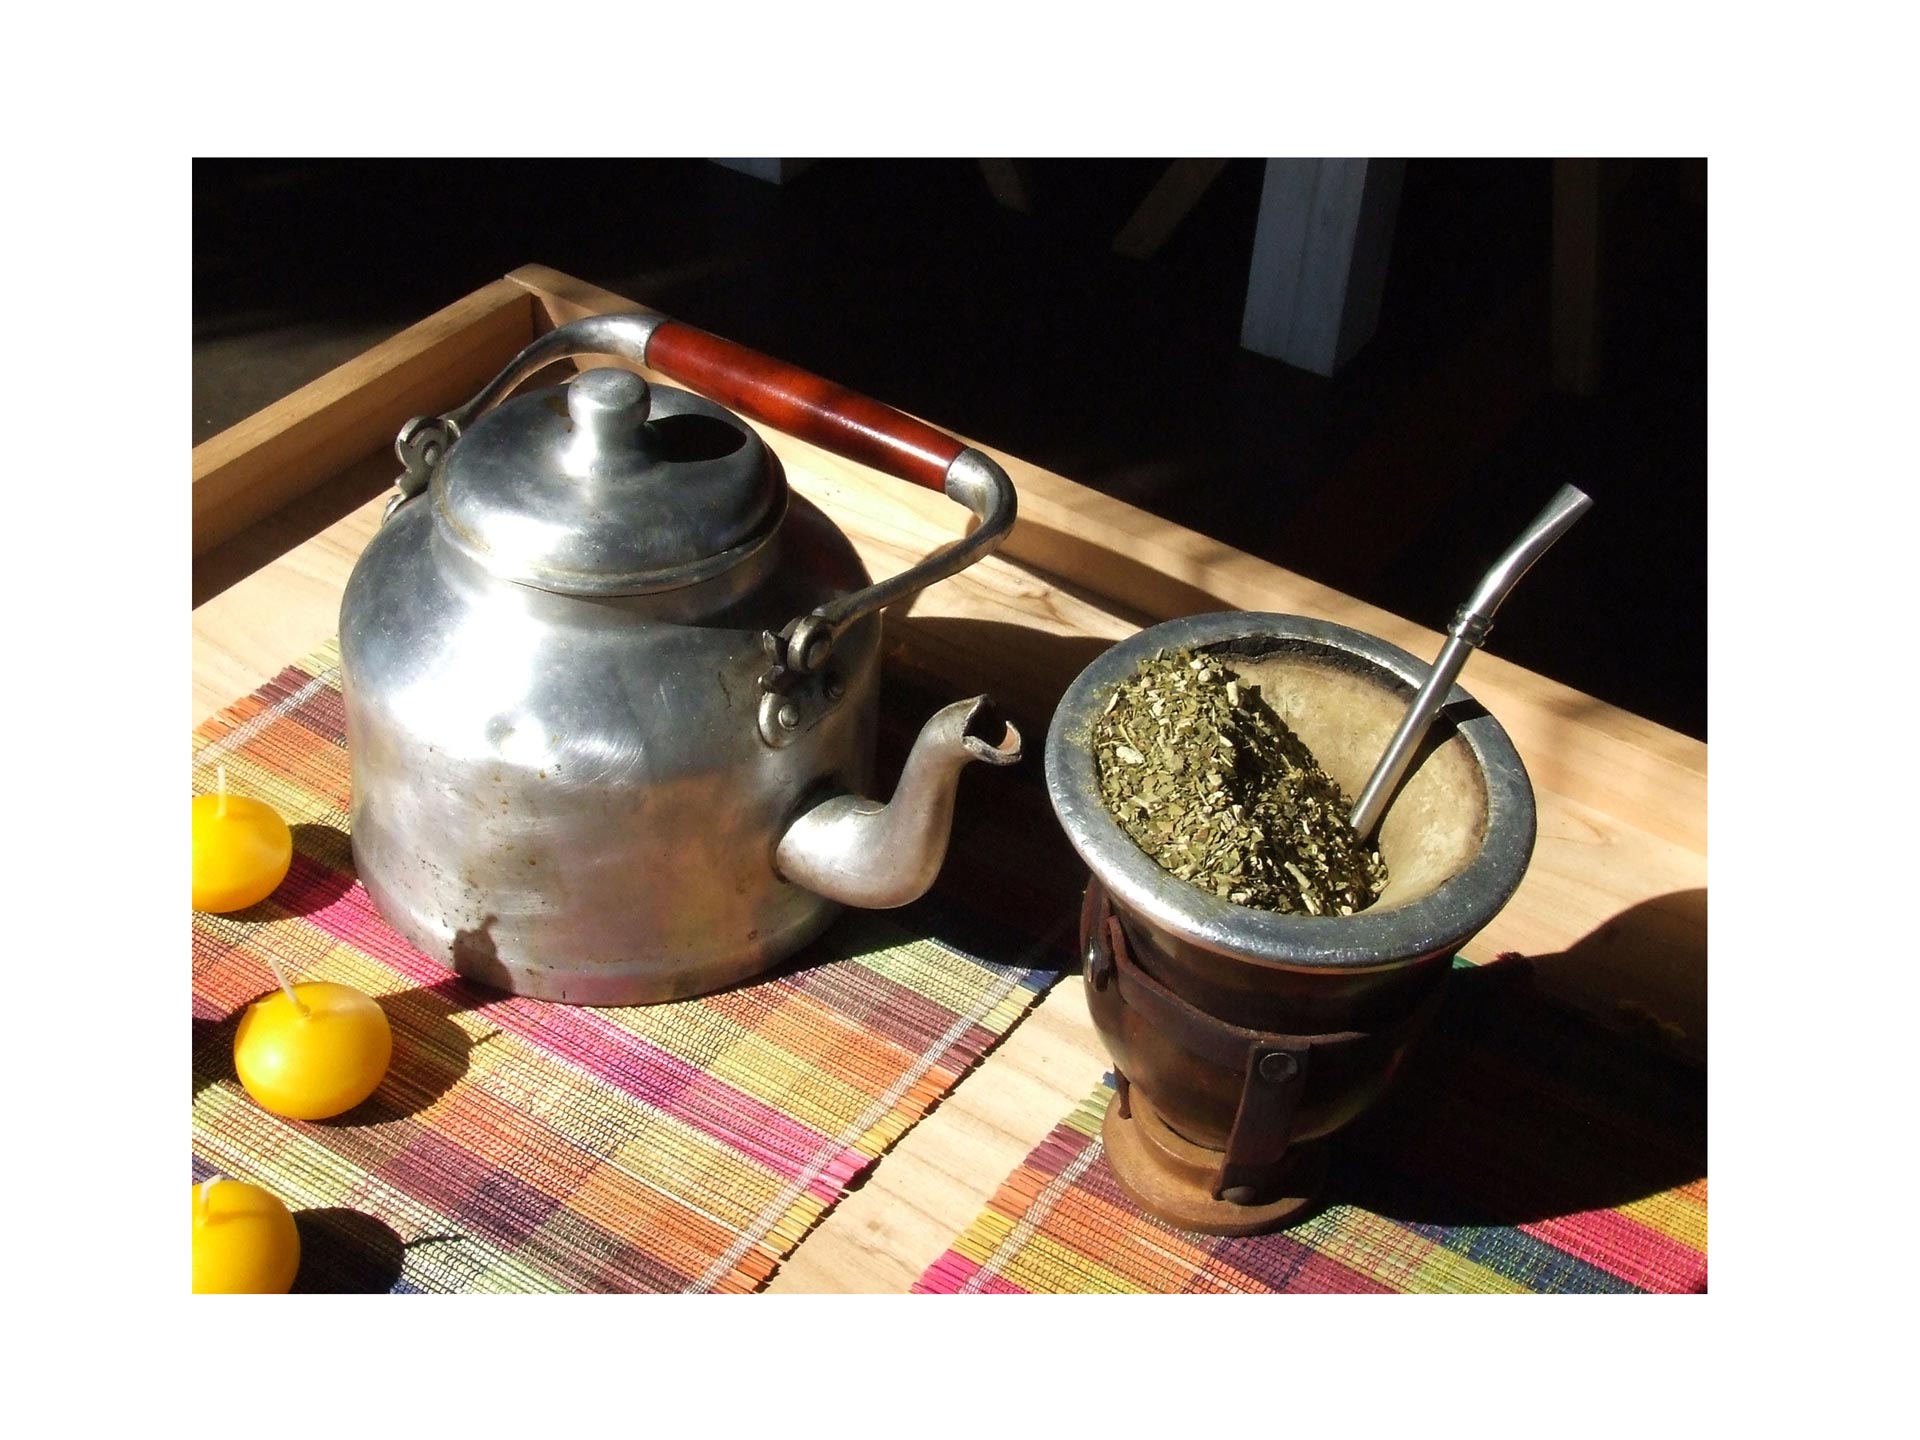 Luego de las declaraciones de la OMS, especialistas afirmaron que el té lo consumen a una temperatura adecuada